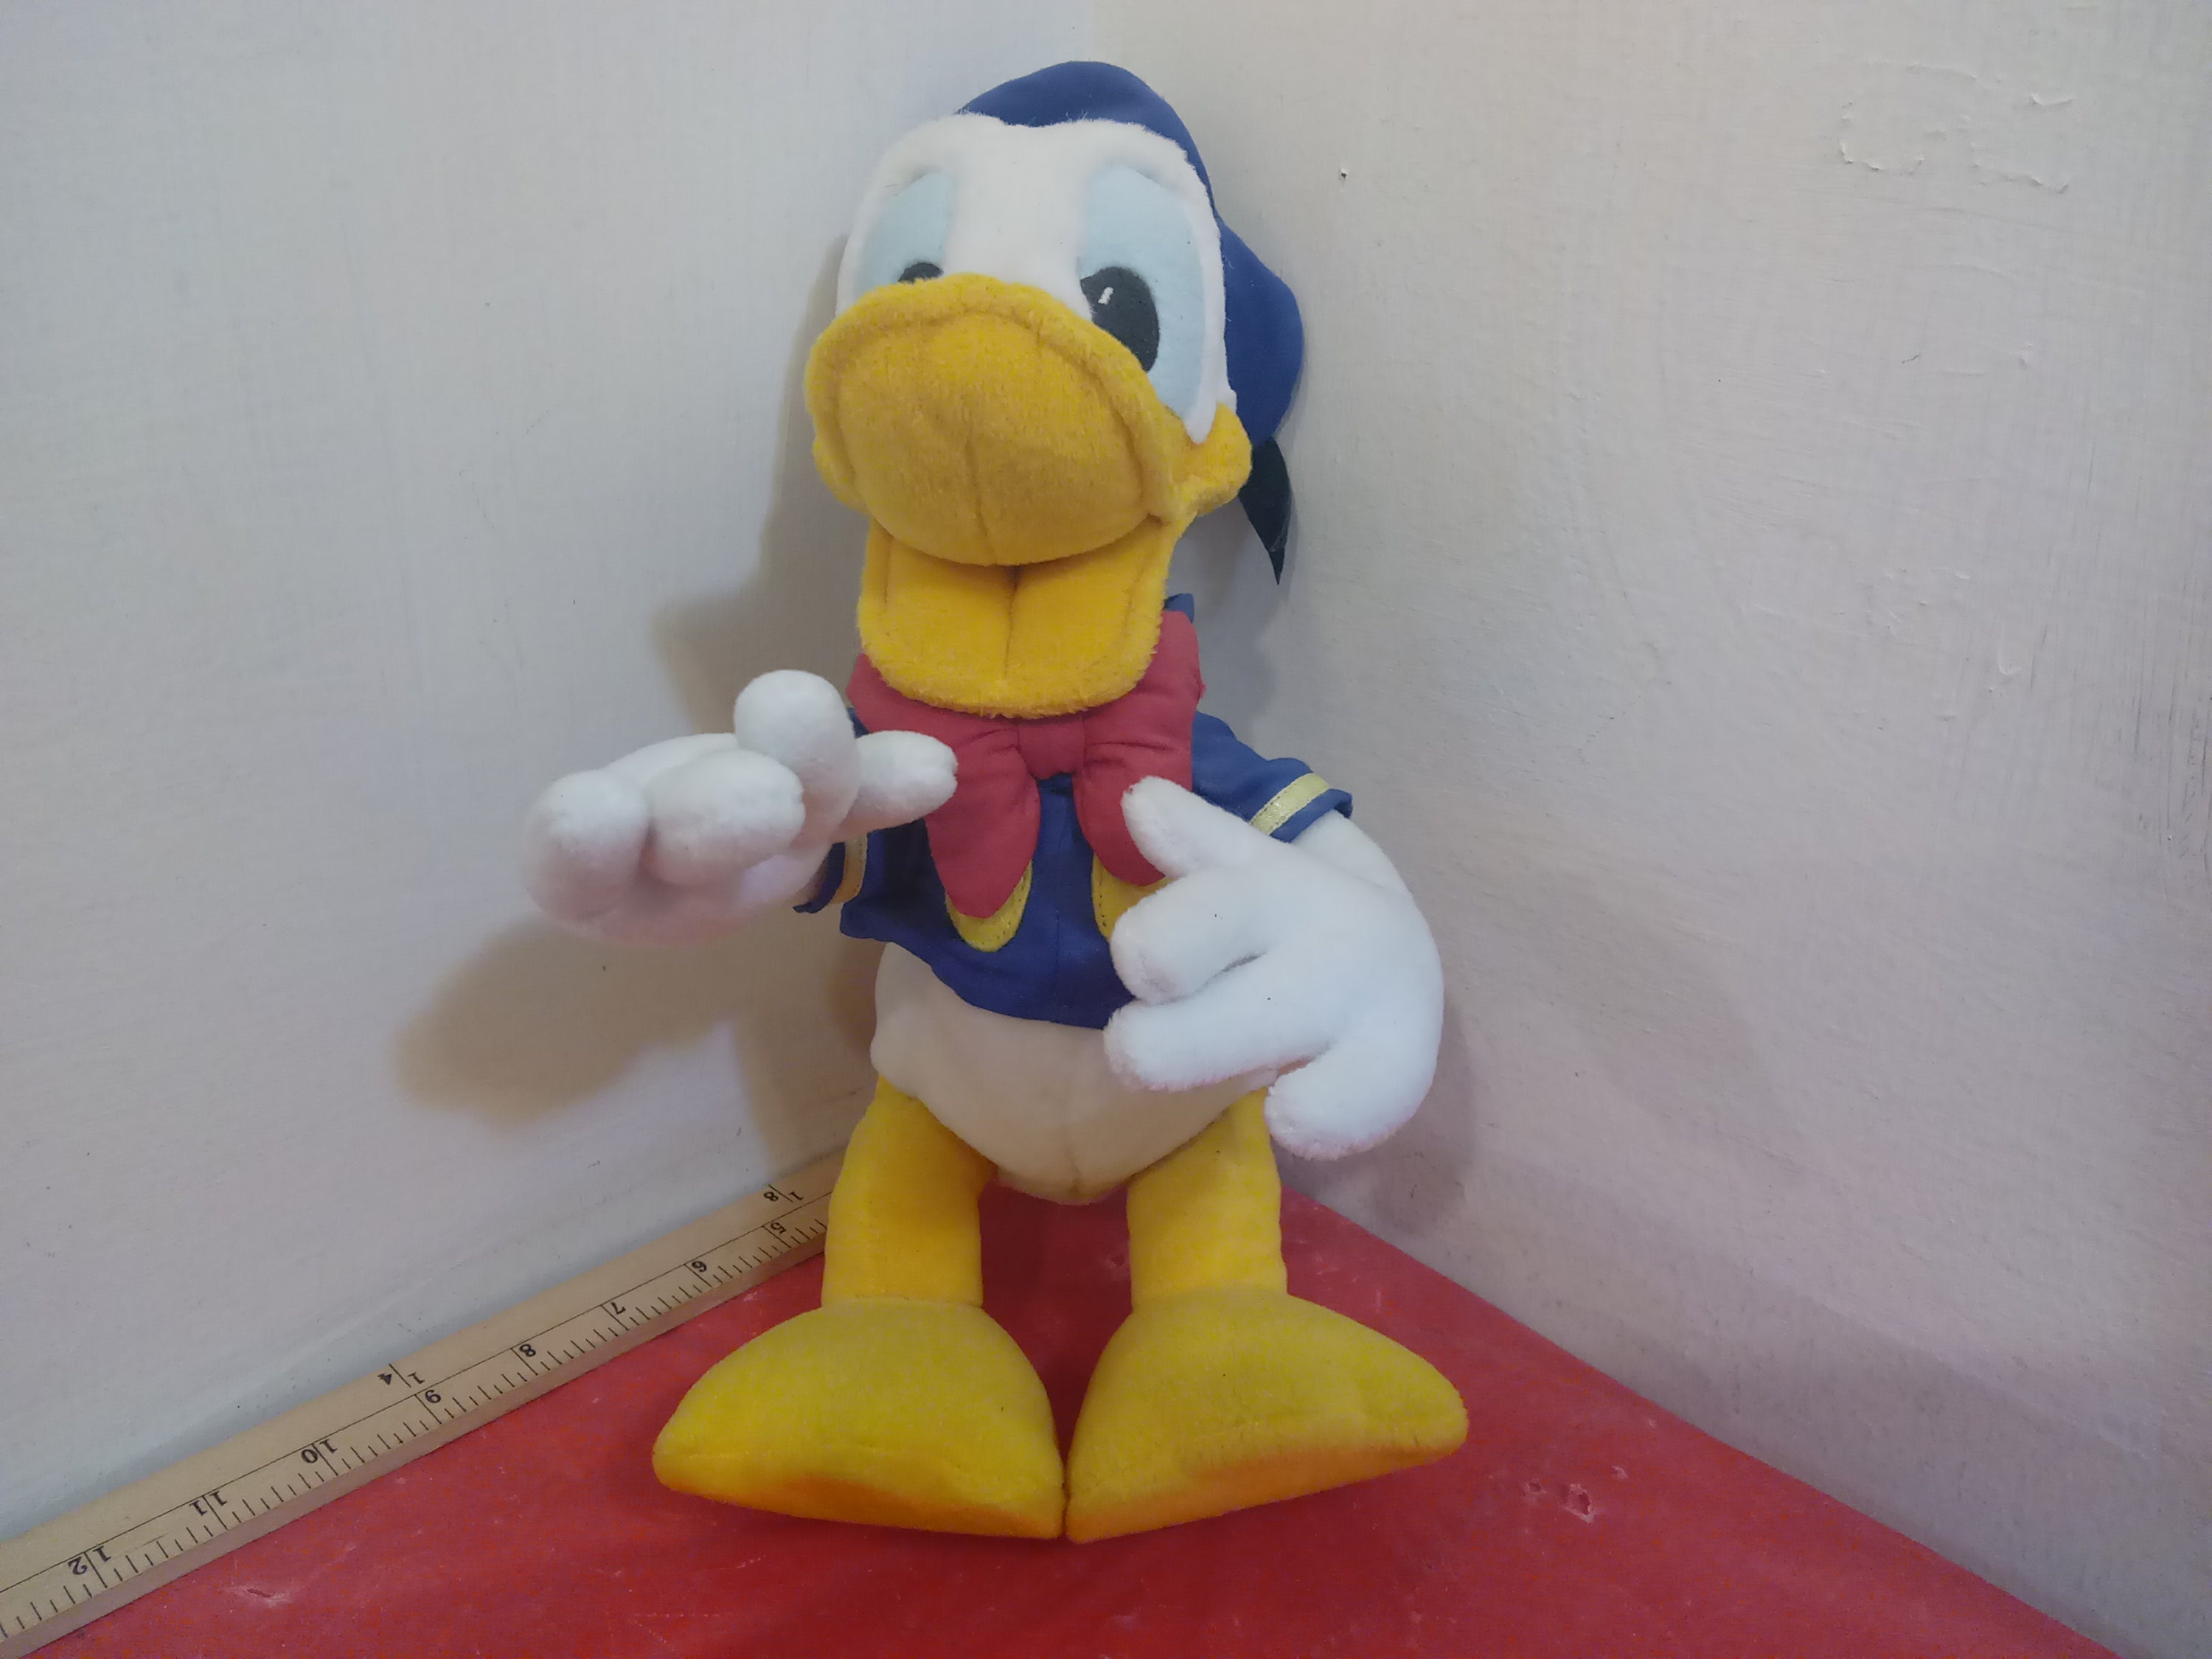 Peluche grande Pato Donald, Disney Store